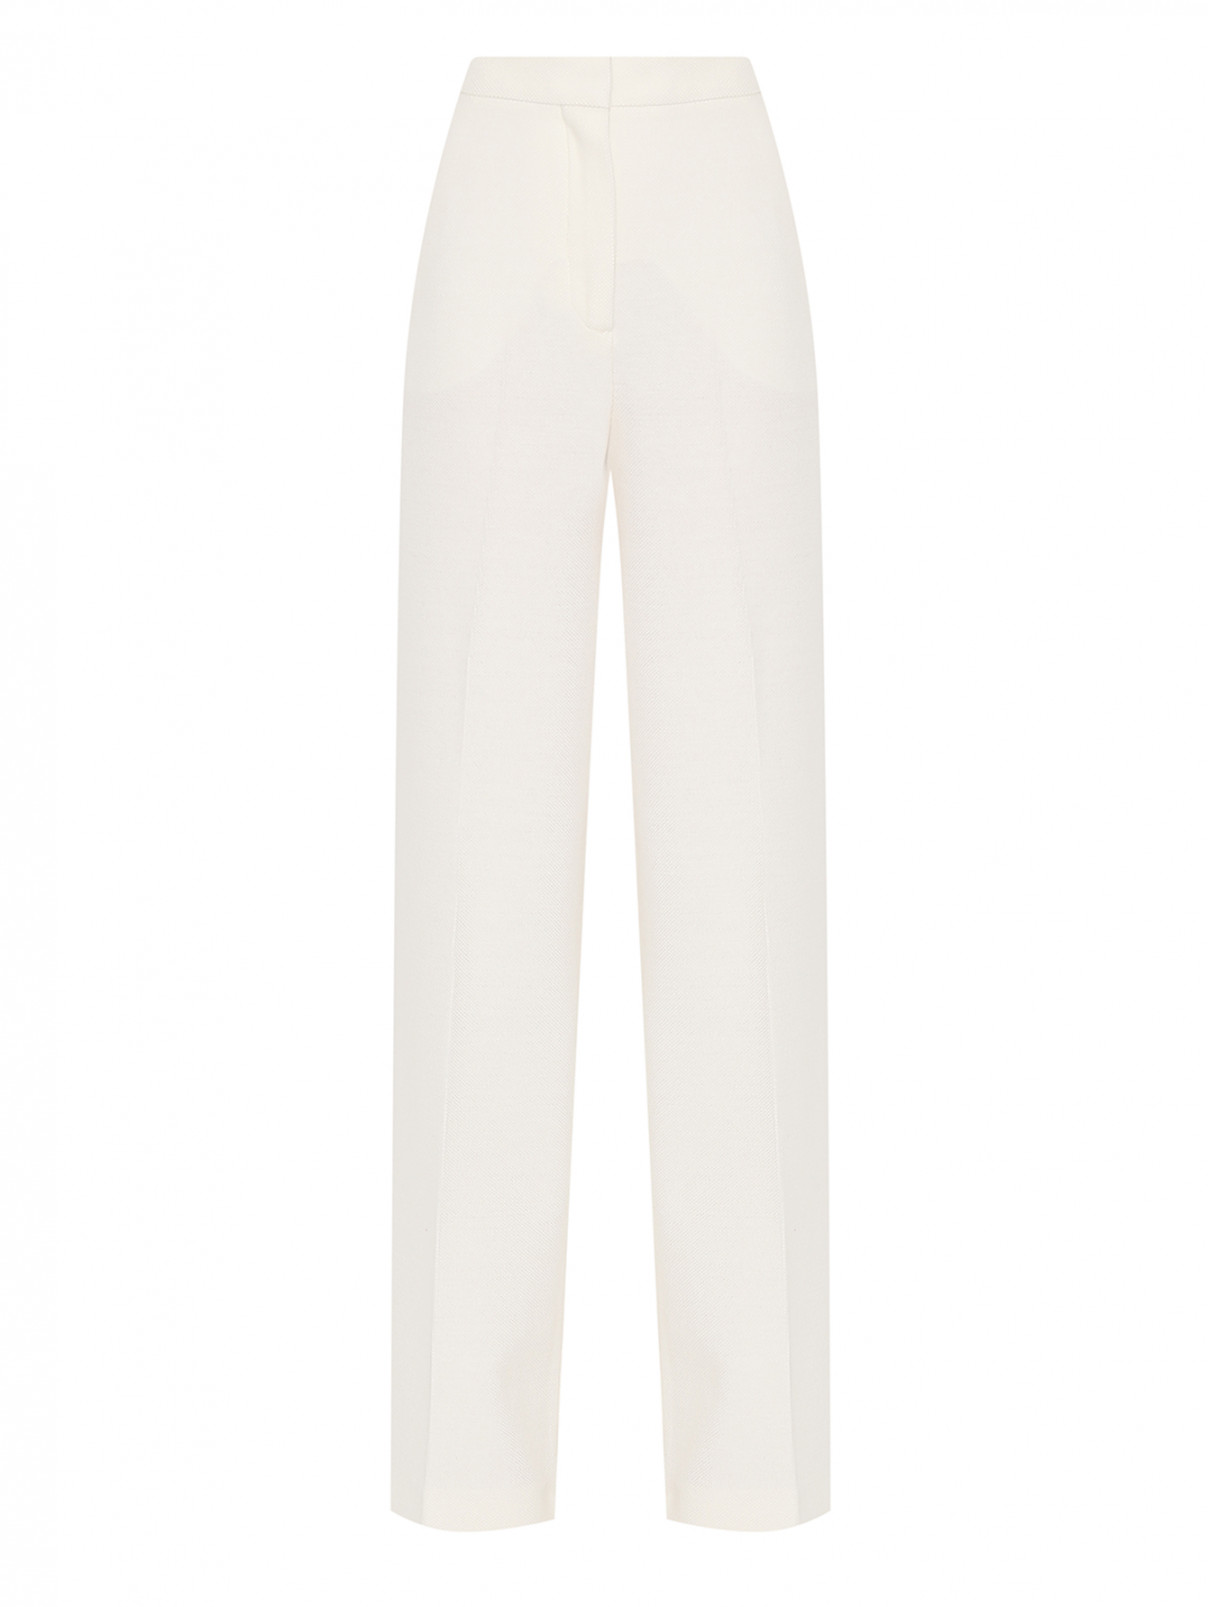 Однотонные брюки из шерсти и хлопка Max Mara  –  Общий вид  – Цвет:  Белый